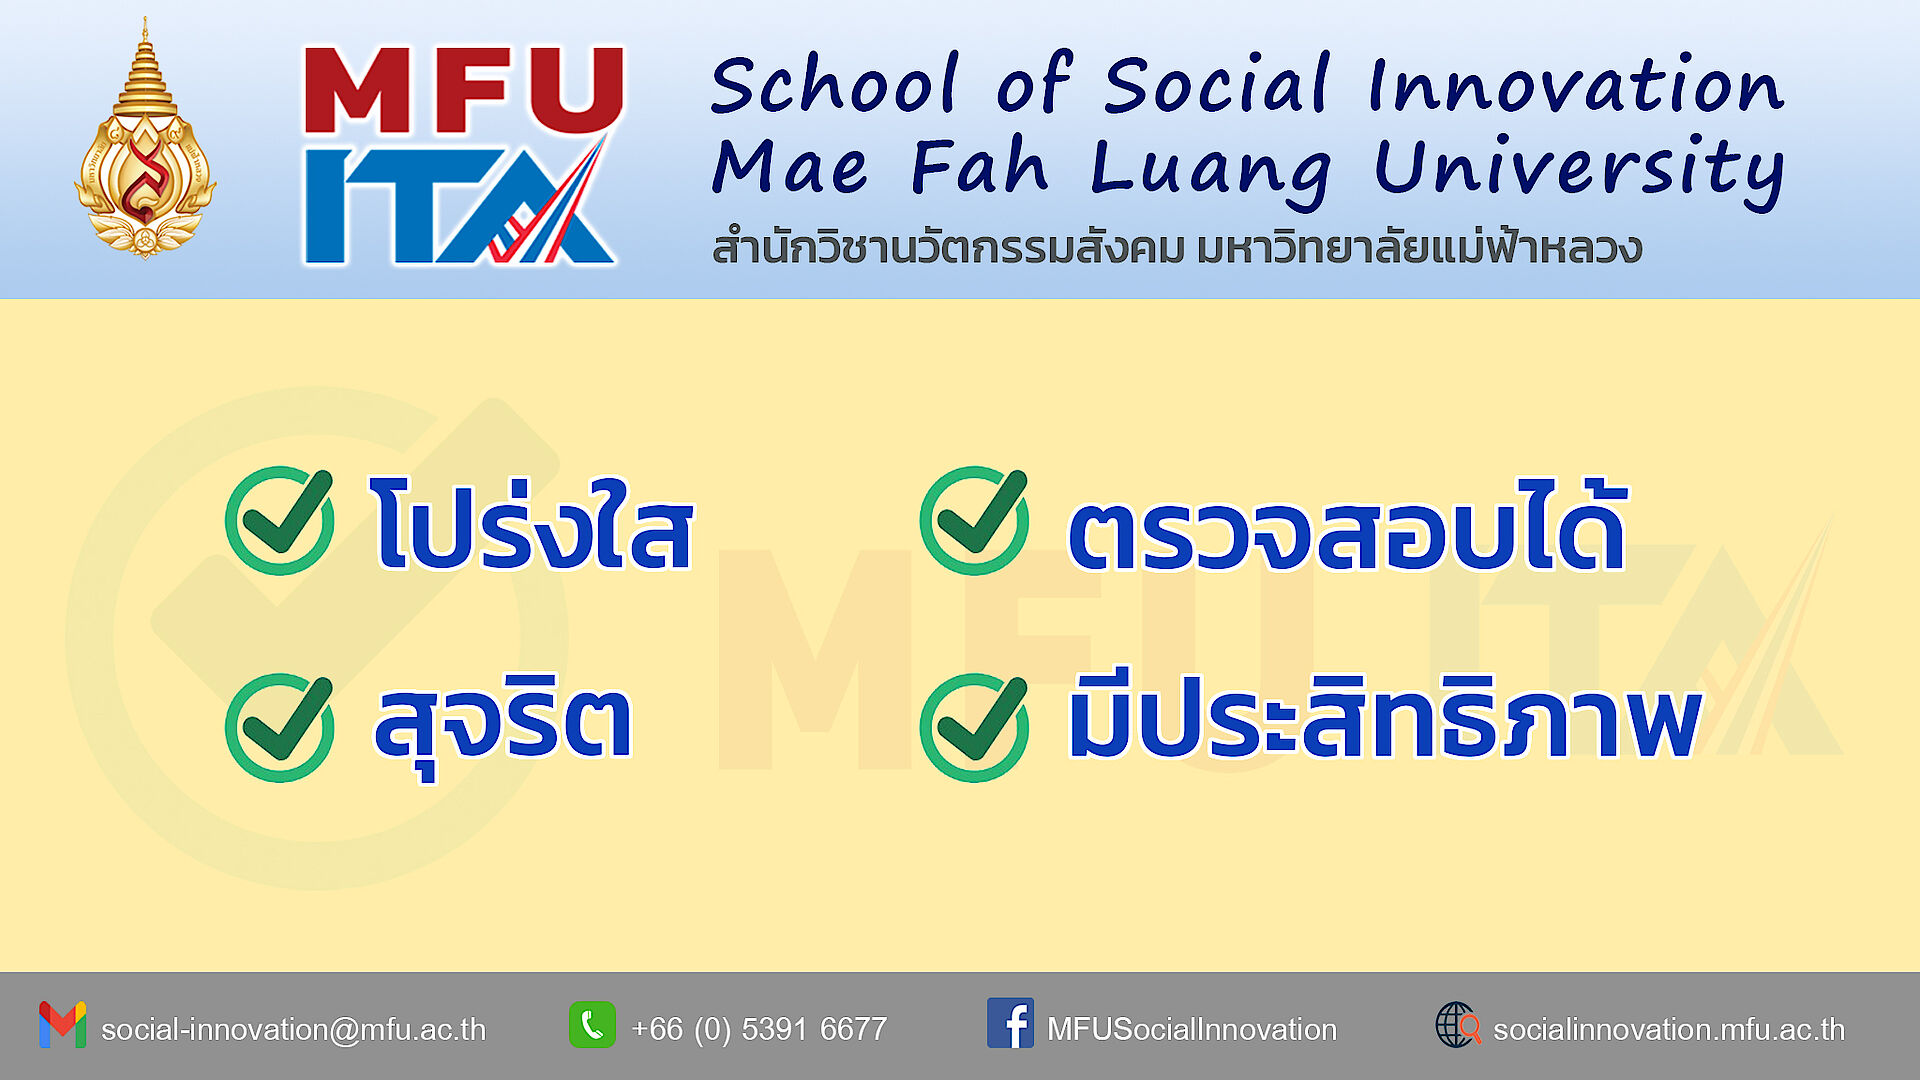 สำนักวิชานวัตกรรมสังคม มฟล. แสดงเจตจำนงสุจริตในการบริหารงานและปฏิบัติงานตามการประเมินคุณธรรมและความโปร่งใสในการดำเนินงานของมหาวิทยาลัยแม่ฟ้าหลวง (Mae Fah Luang University Integrity and Transparence Assessment: MFU ITA)